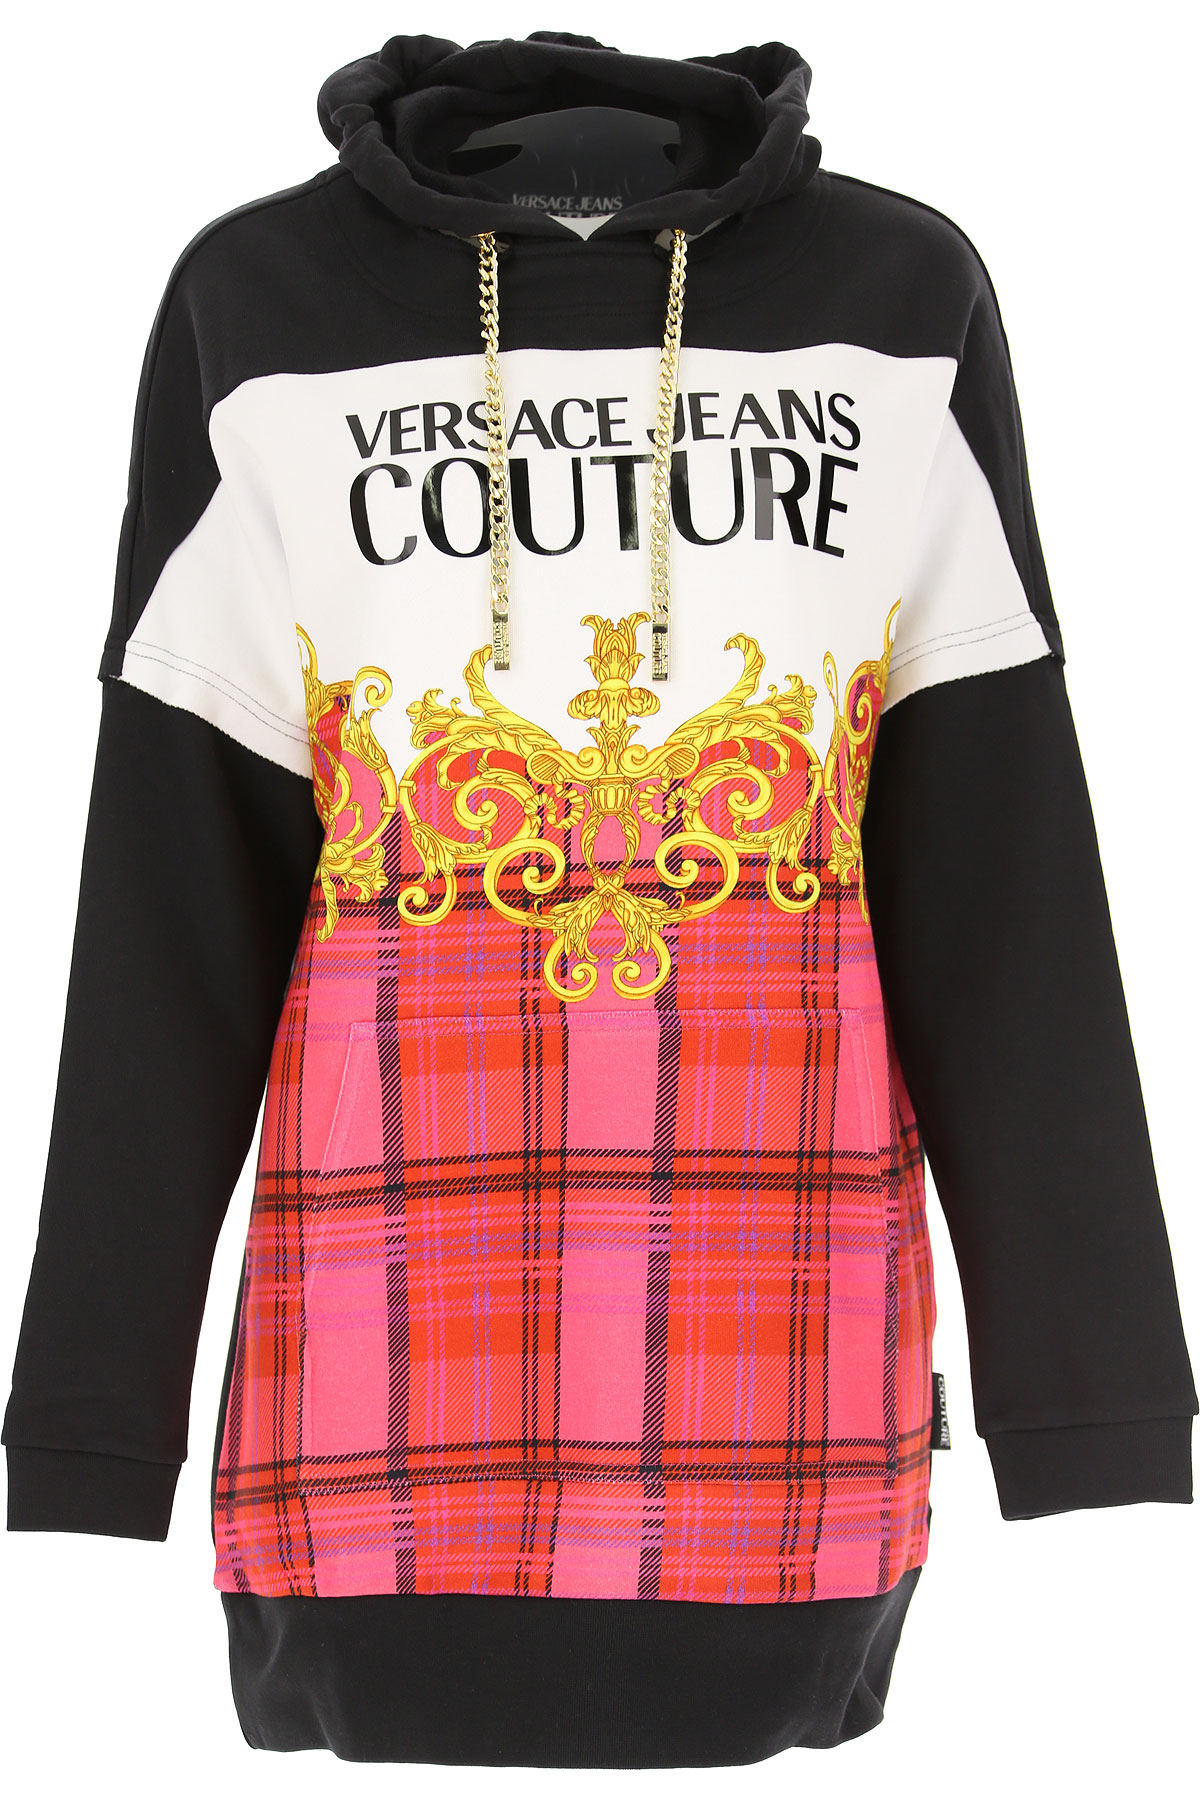 Versace Jeans Couture Sweatshirt für Damen, Kapuzenpulli, Hoodie, Sweats Günstig im Sale, Schwarz, Baumwolle, 2017, 38 XXS